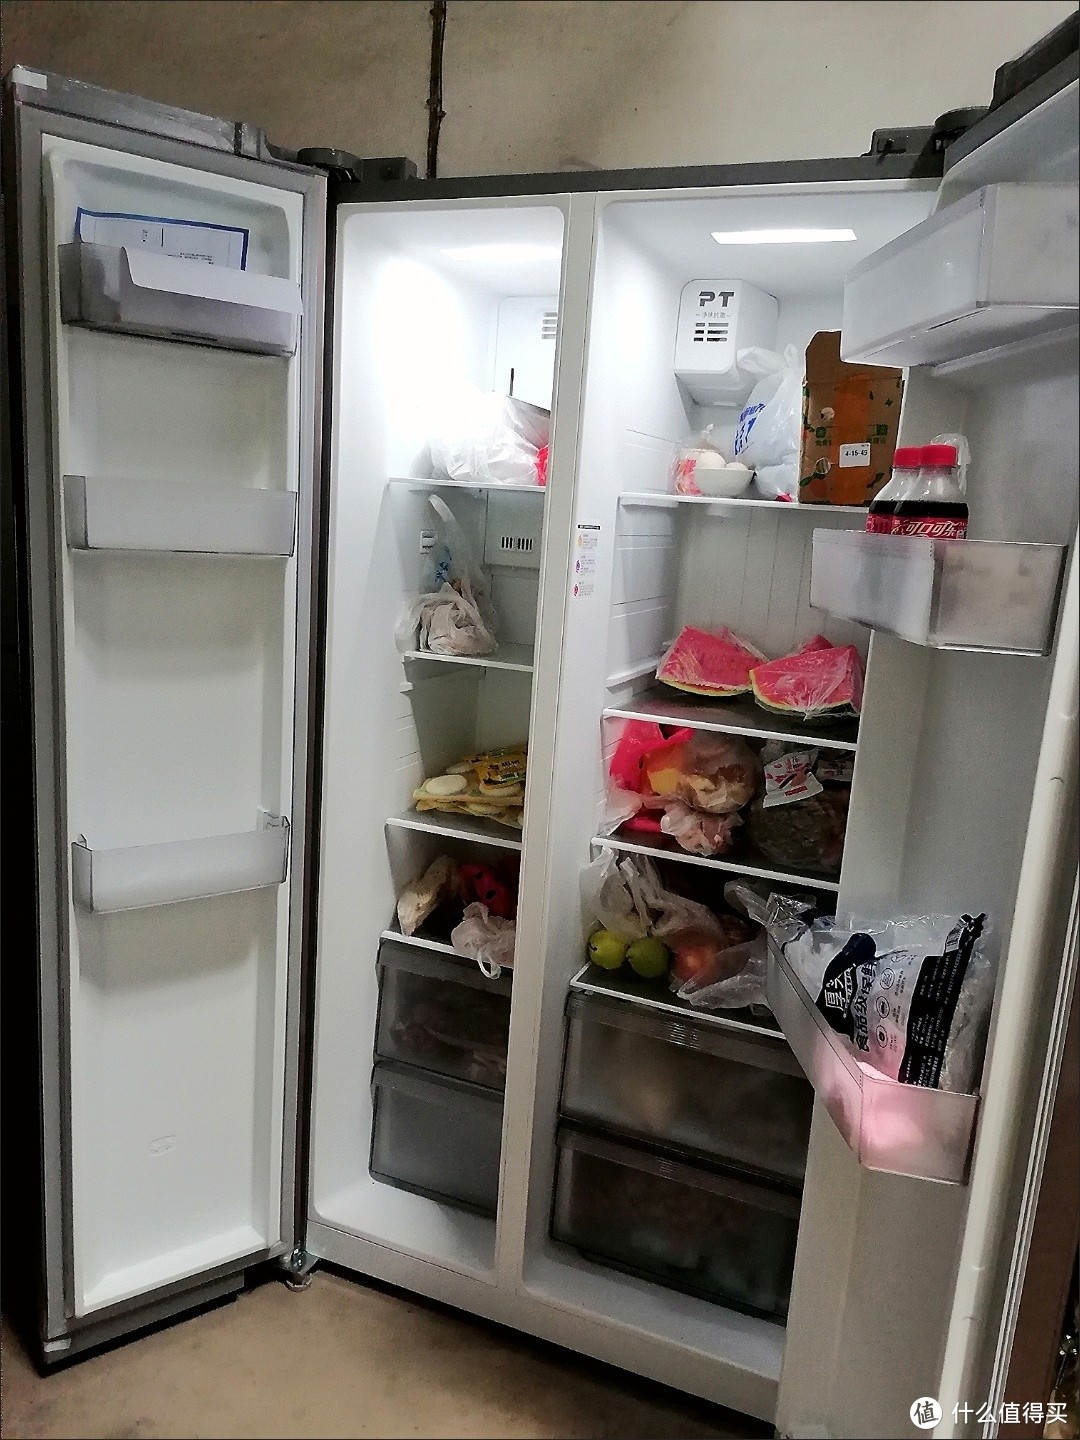 以前没有冰箱，人民如何保存食物呢？